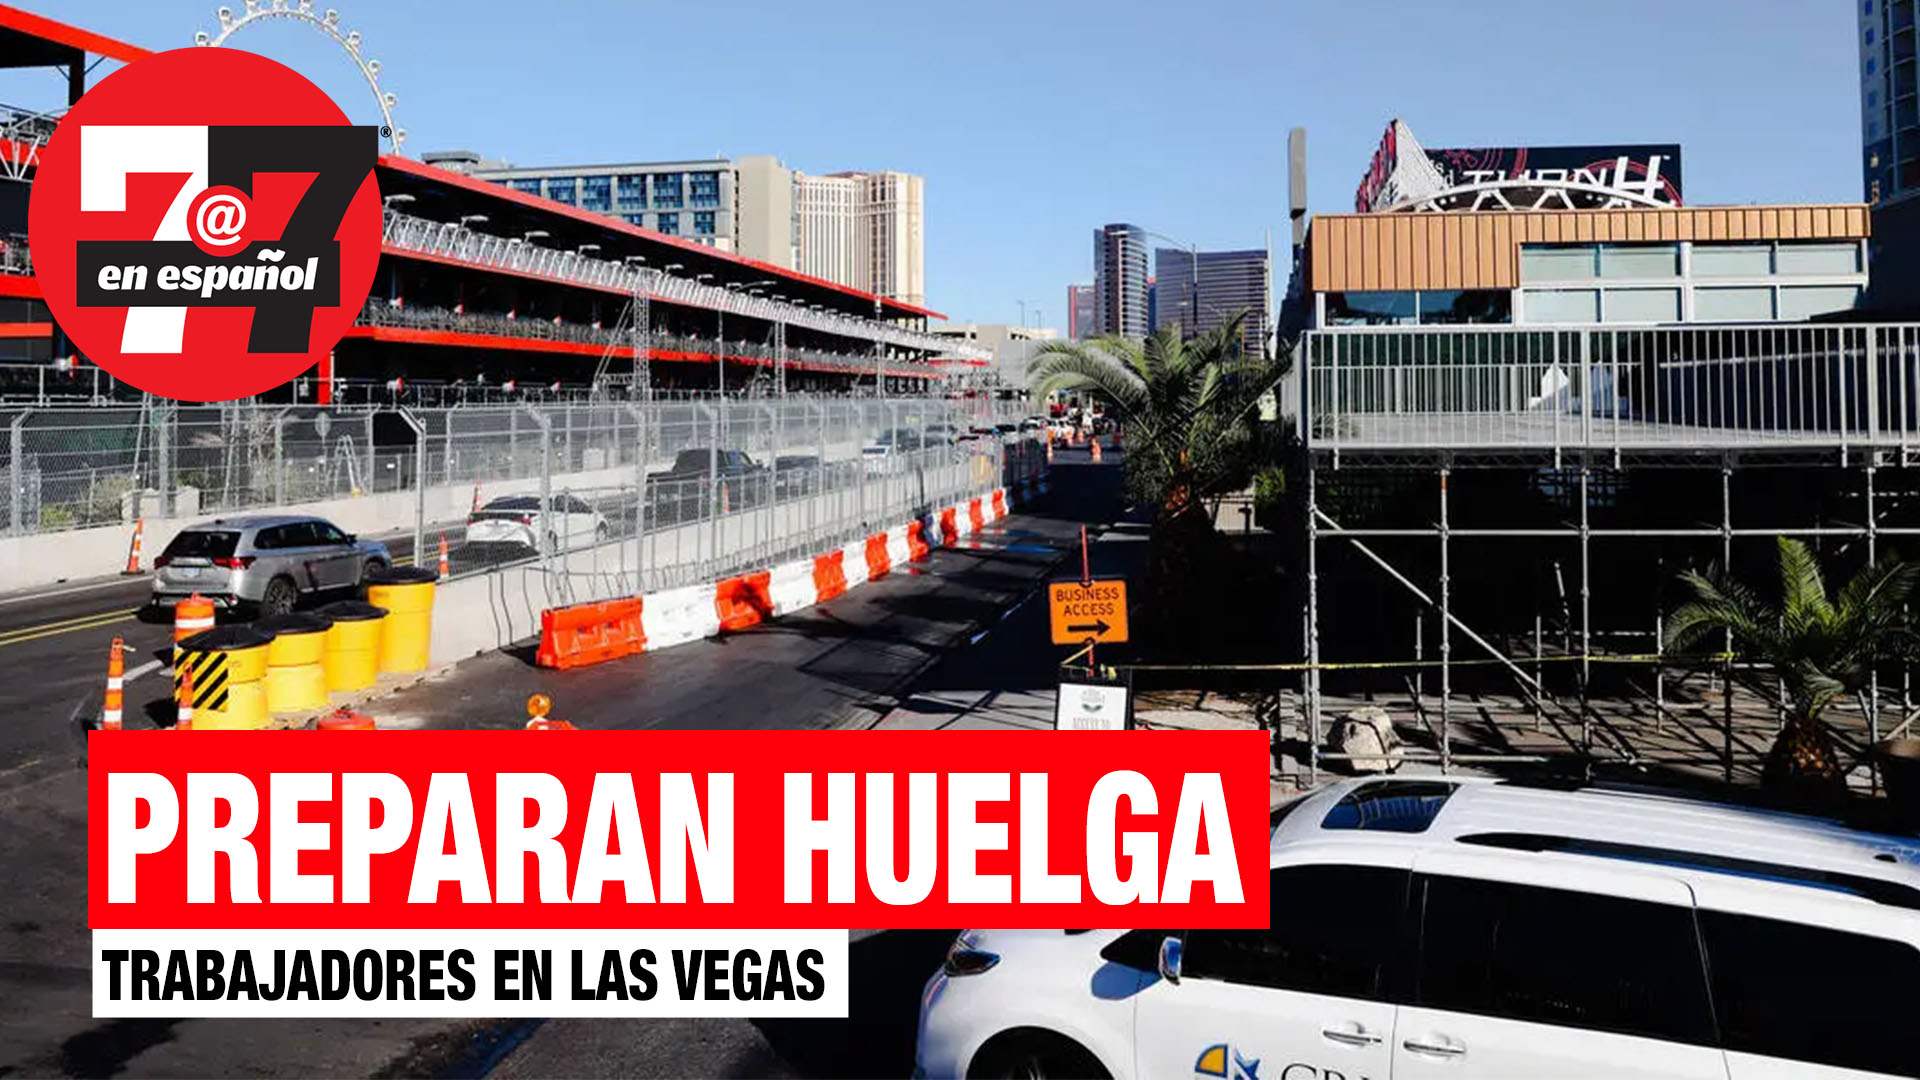 Noticias de Las Vegas | Trabajadores se preparan para huelga en el Strip